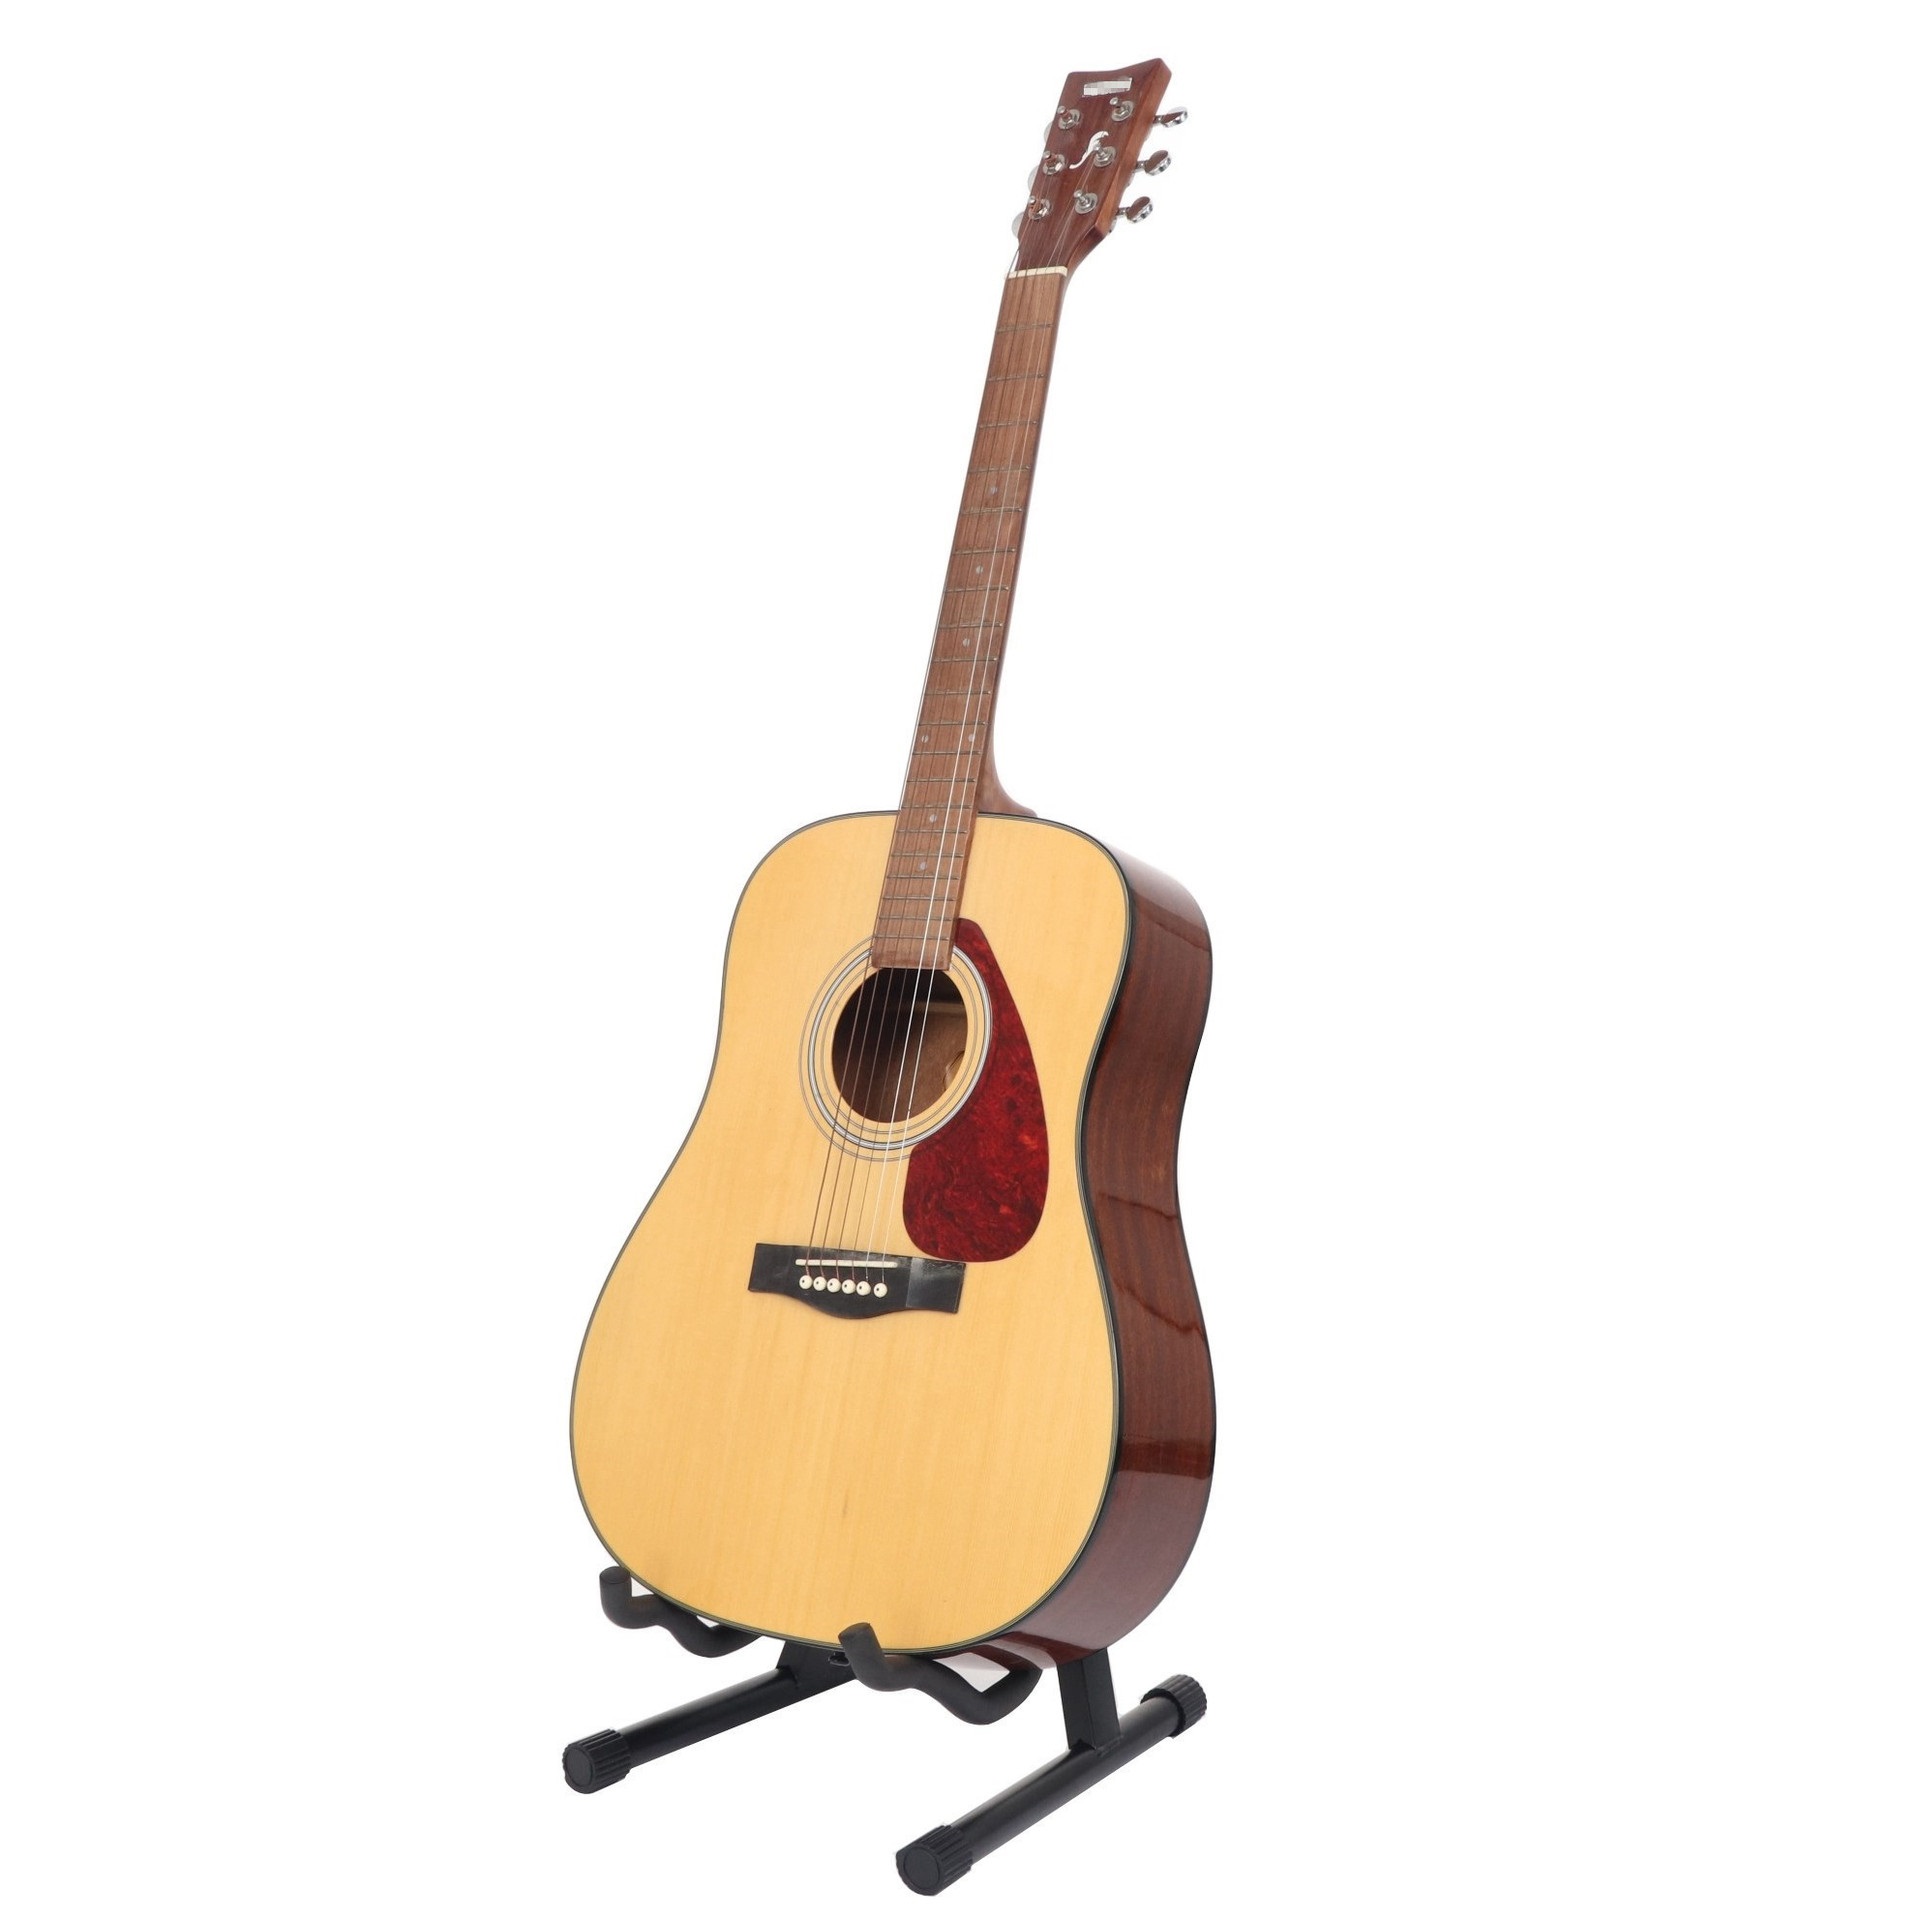 Giá để/ Chân để/ Giá đỡ/ Chân đỡ đàn Guitar cao cấp - Kzm Kurtzman J2 - Đa năng, dành cho tất cả loại đàn Guitar - Màu đen - Hàng chính hãng